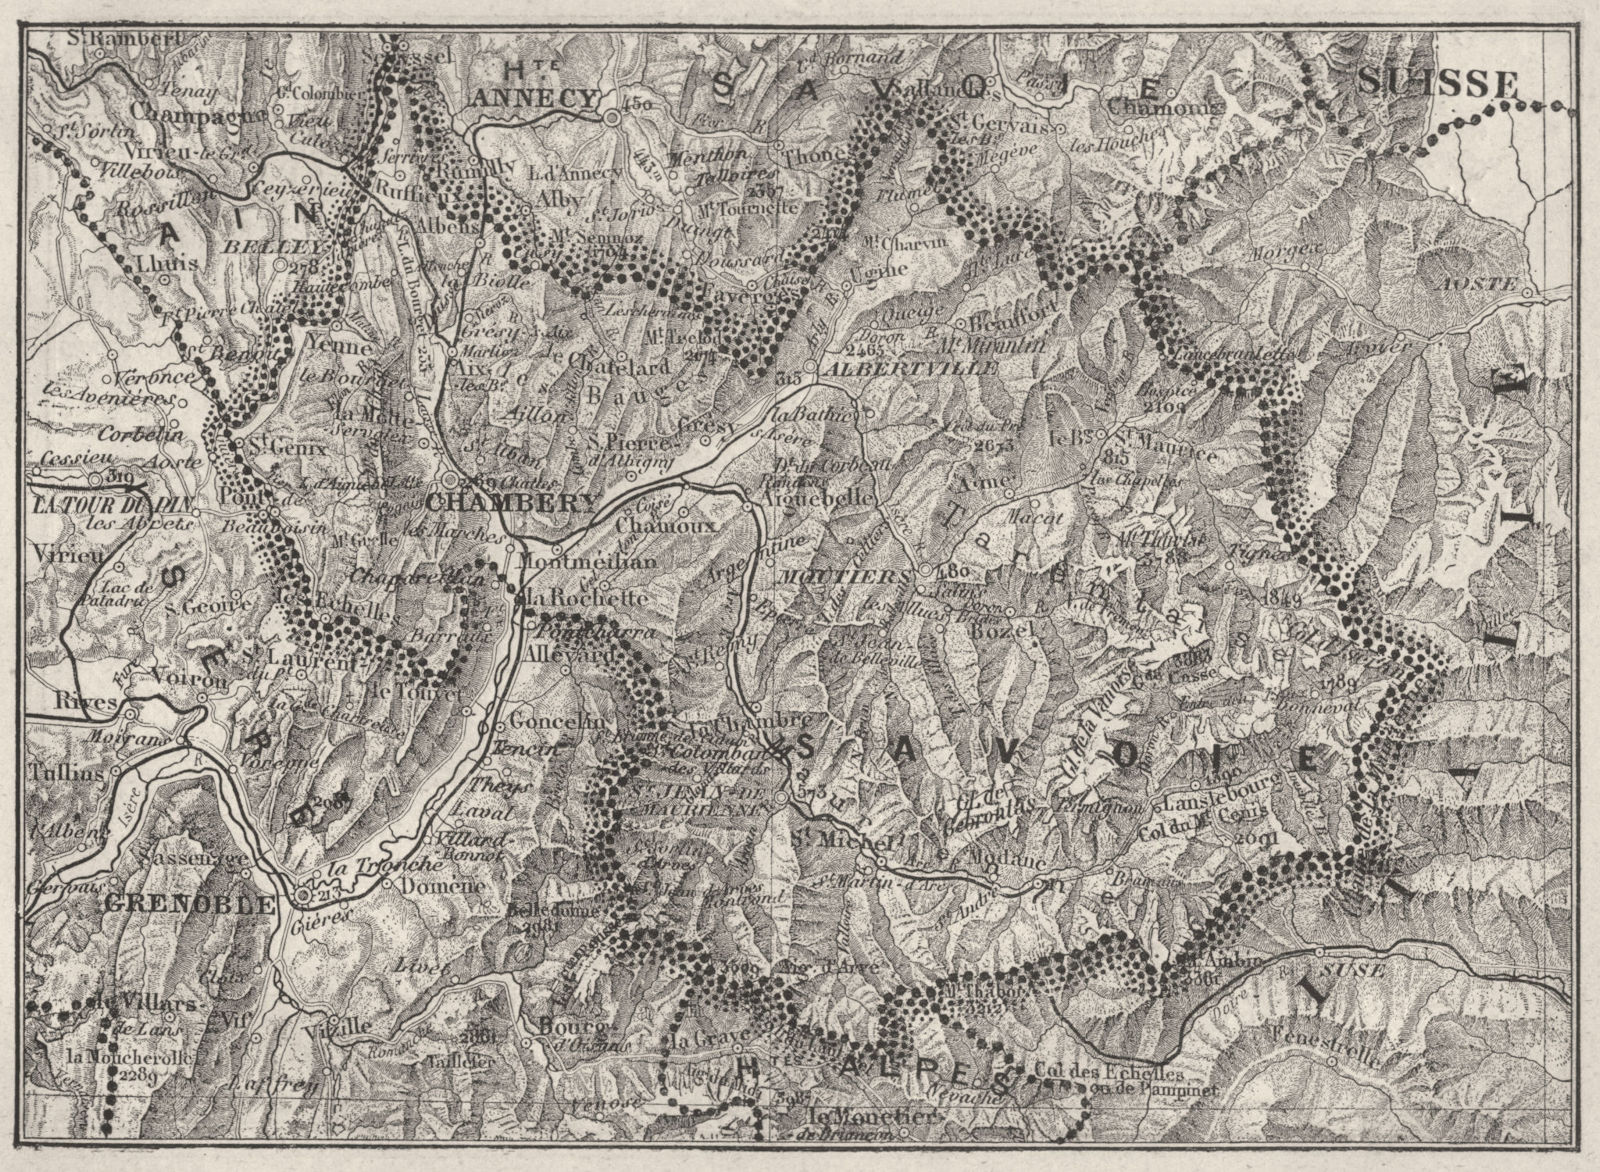 SAVOIE. Savoie 1878 old antique vintage map plan chart